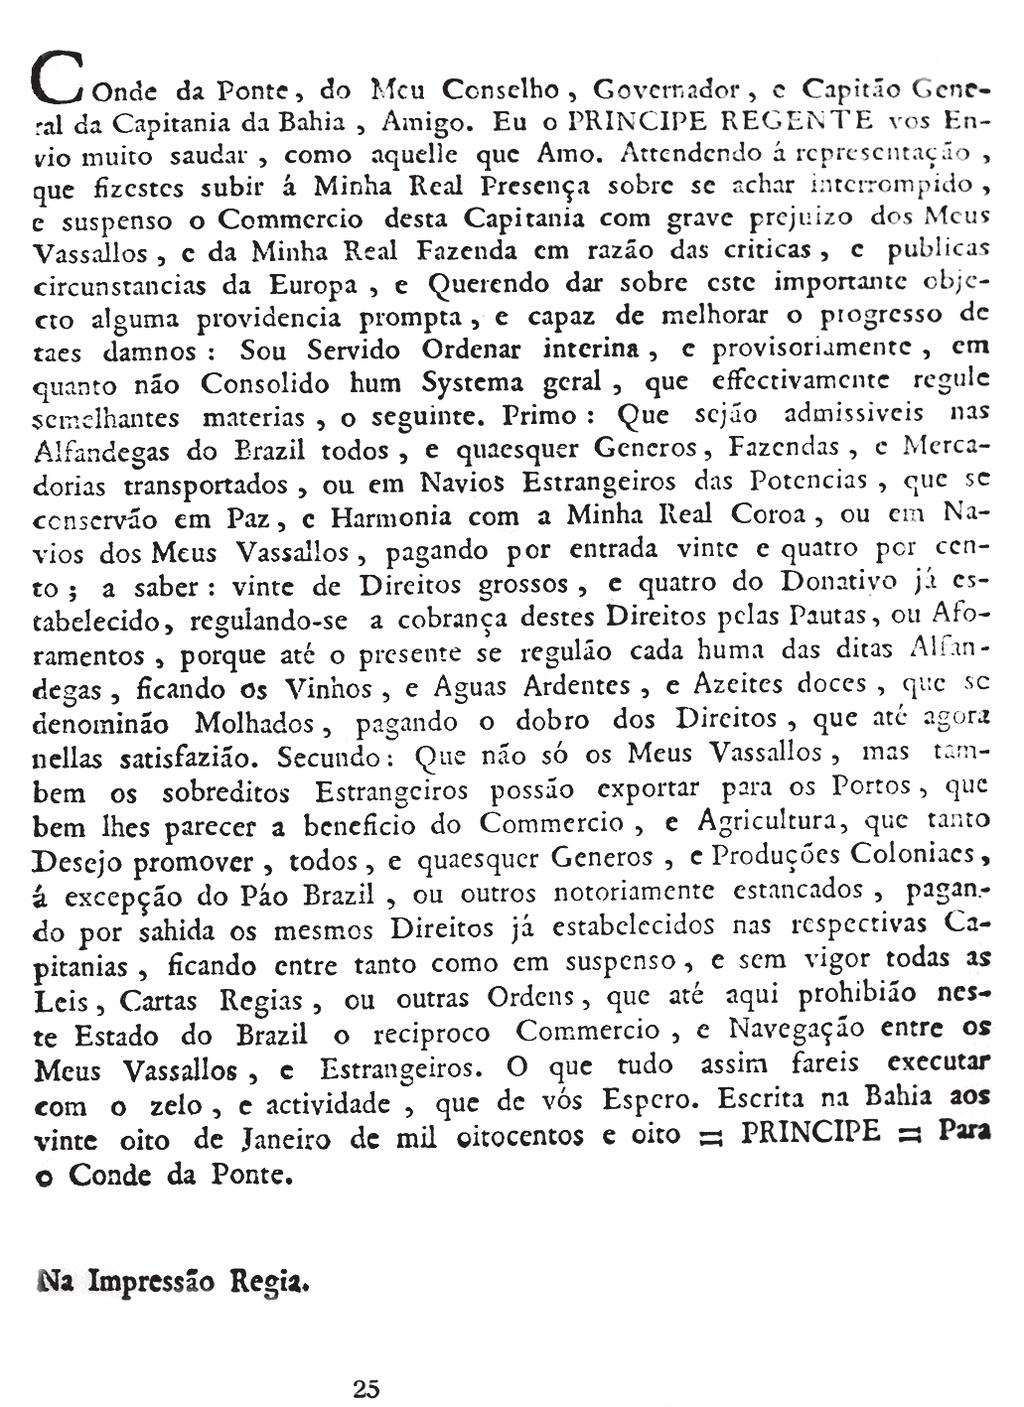 A Impressão Régia 163 A chegada da Corte ao Brasil em 7 de março de 1808 A partir de novembro de 2007 e por todo o ano de 2008, se comemoraram os 200 anos da chegada da Corte Portuguesa ao Brasil.